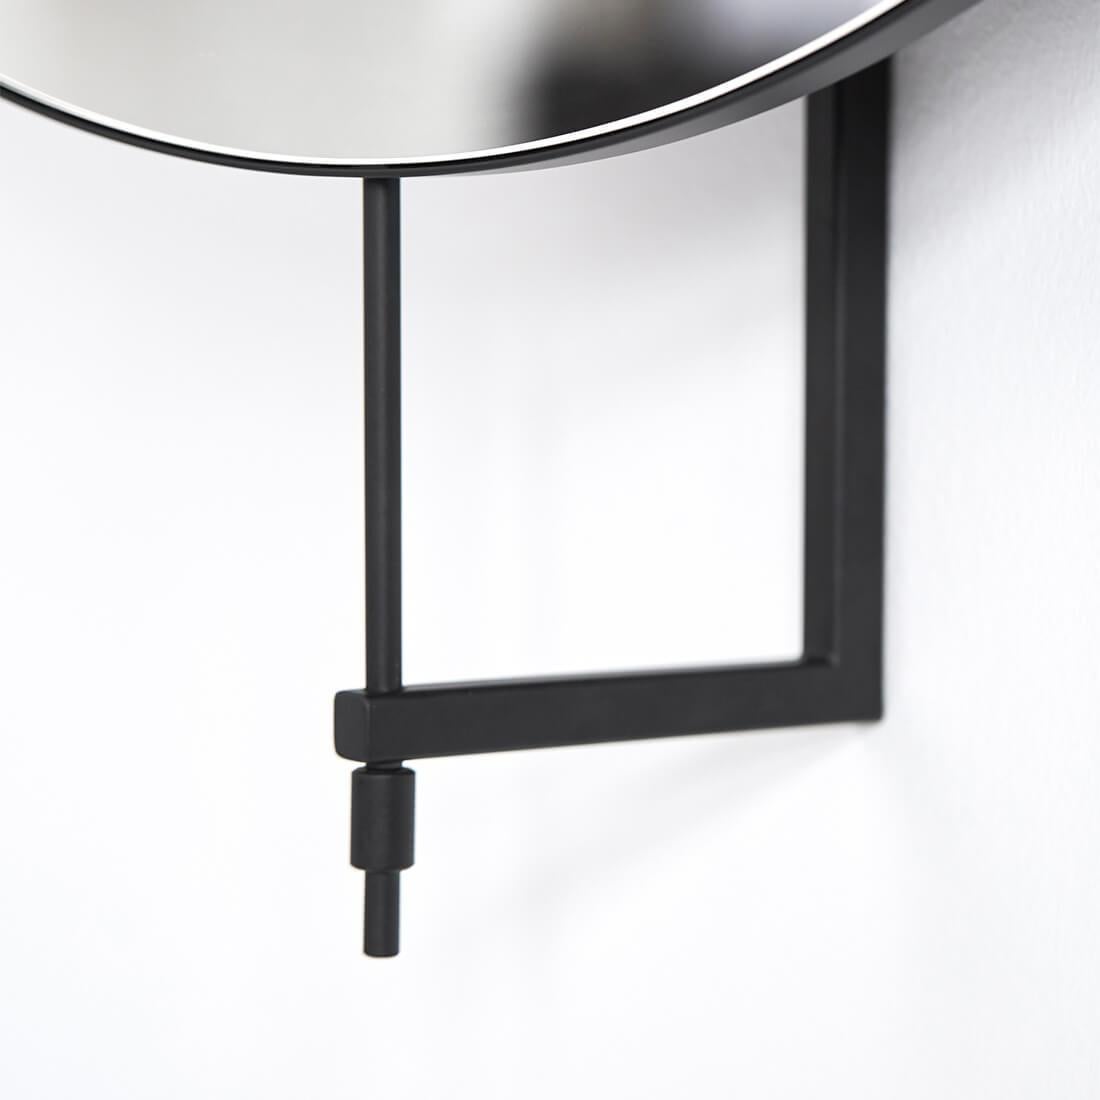 Danish Stainless Steel Circle Rotating Mirror by Kristina Dam Studio